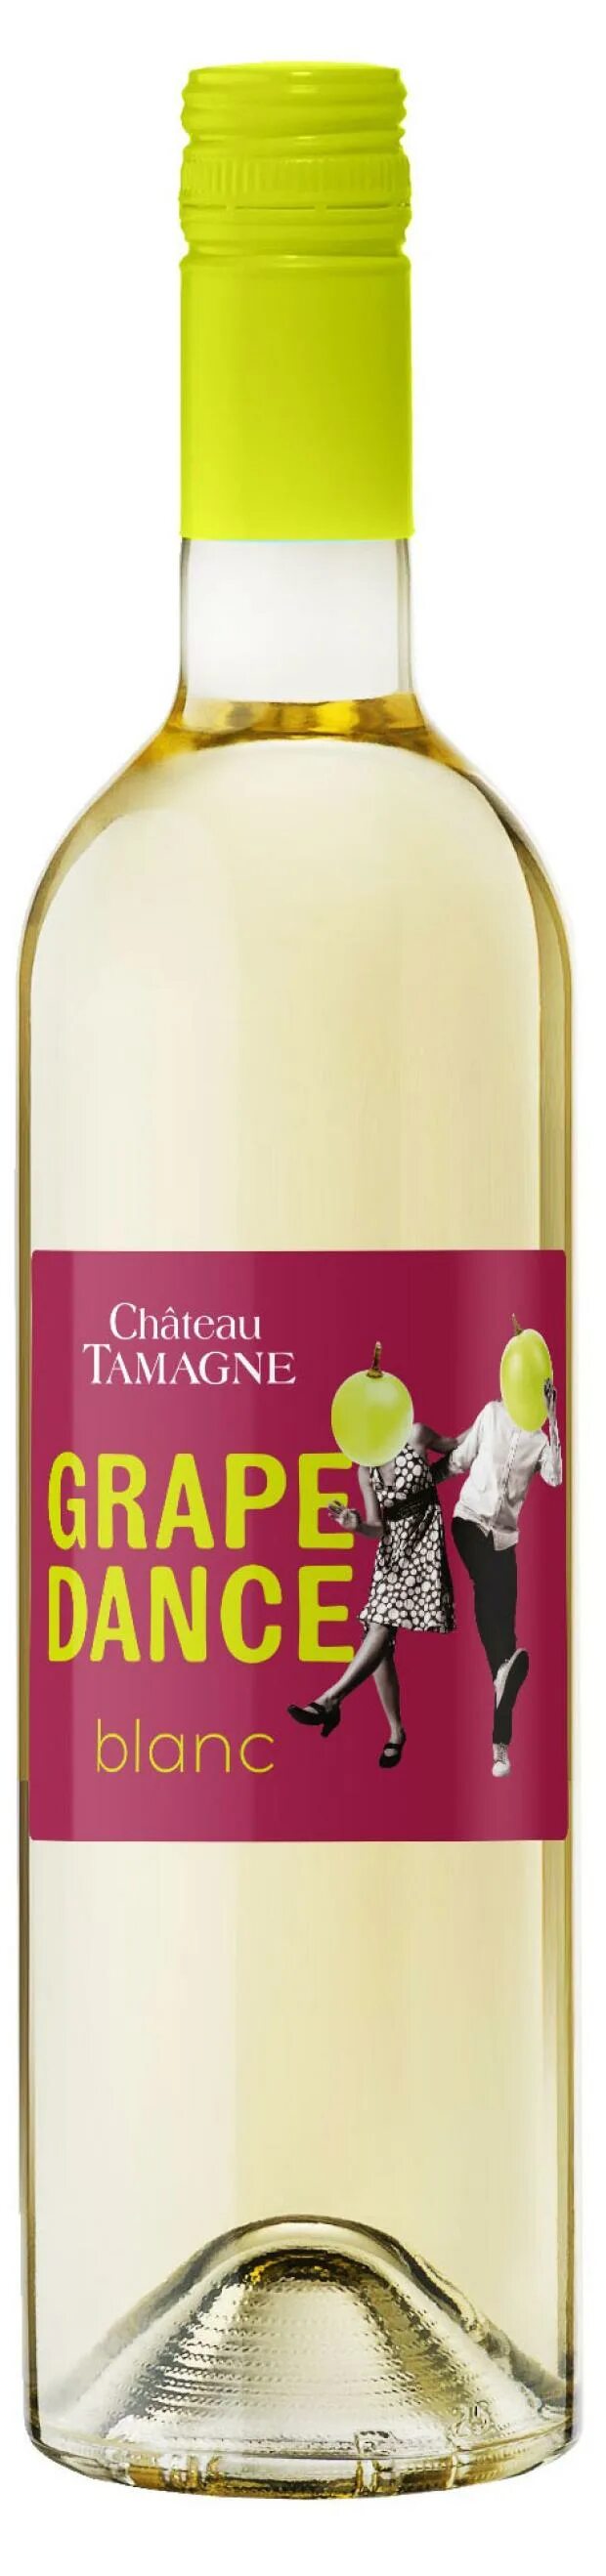 Вино шато тамань грейп. Вино Chateau Tamagne grape Dance. Грейп дэнс Шато Тамань белое полусухое. Chateau Tamagne белое вино Dance. Вино Шато Тамань grape Dance.